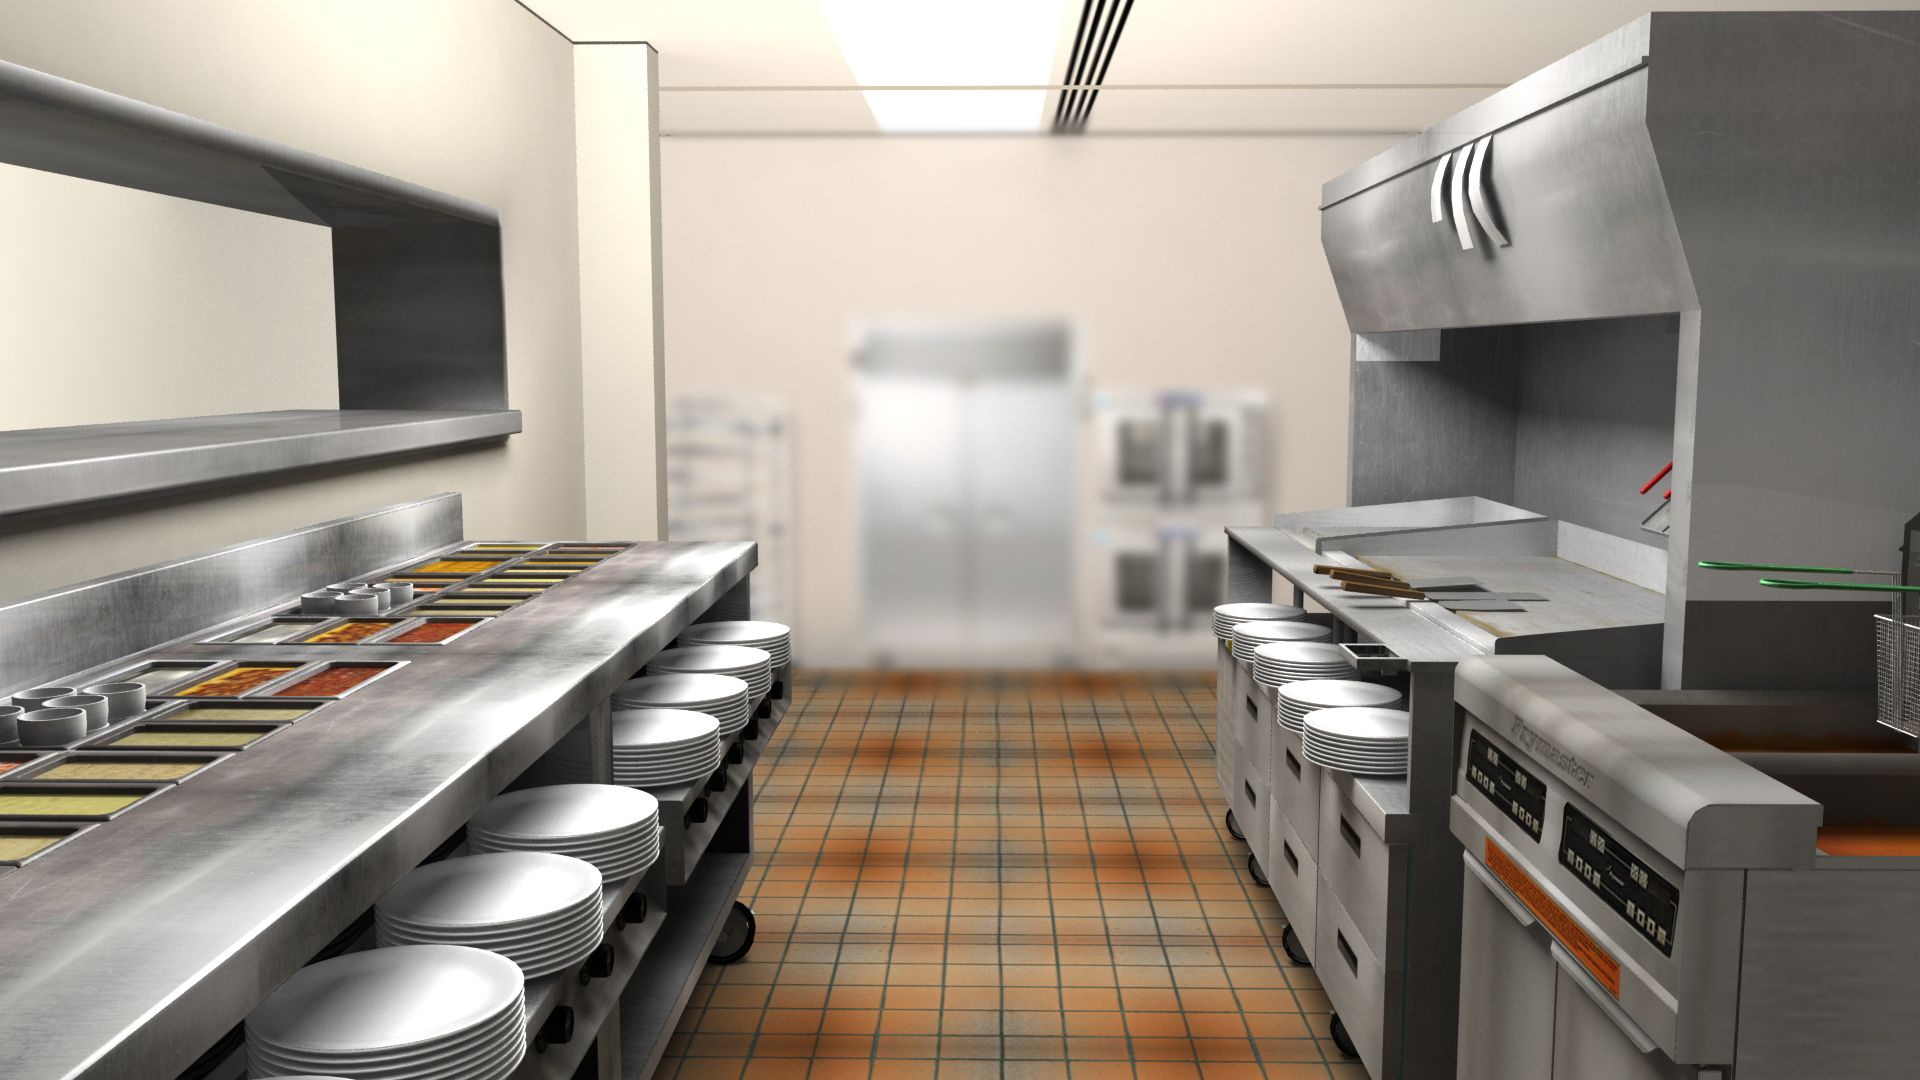 3D_Kitchen_Render_01_resized.jpg